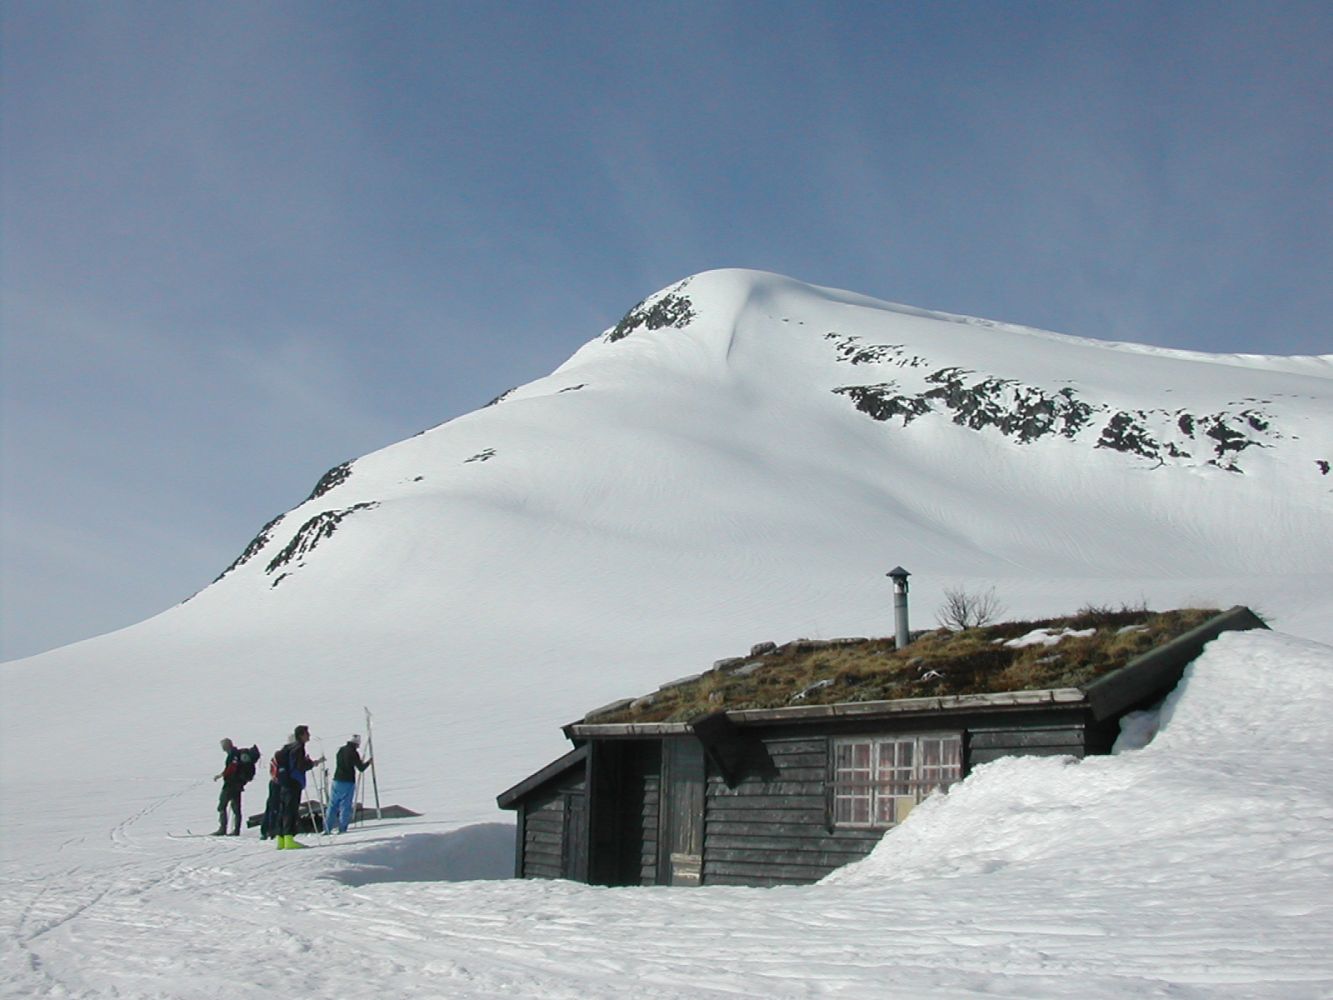 Fire skiløpere har tatt av seg skiene og har pause utenfor hytte.